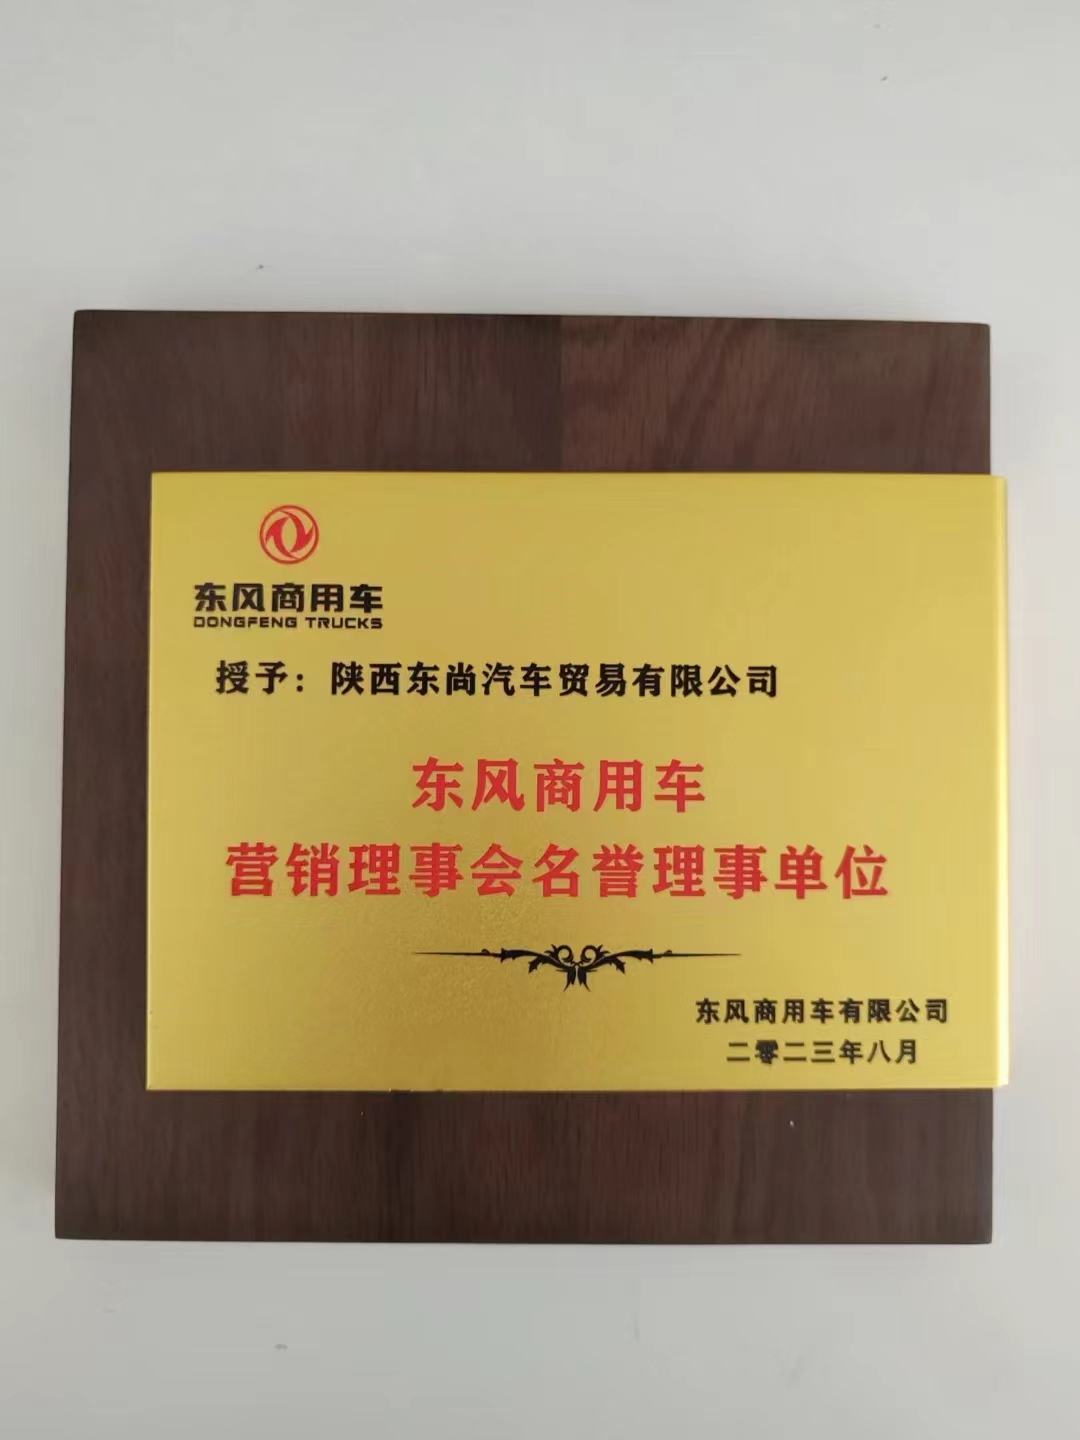 熱烈祝賀陜西東尚獲得"東風商用車營銷理事會名譽理事單位"    